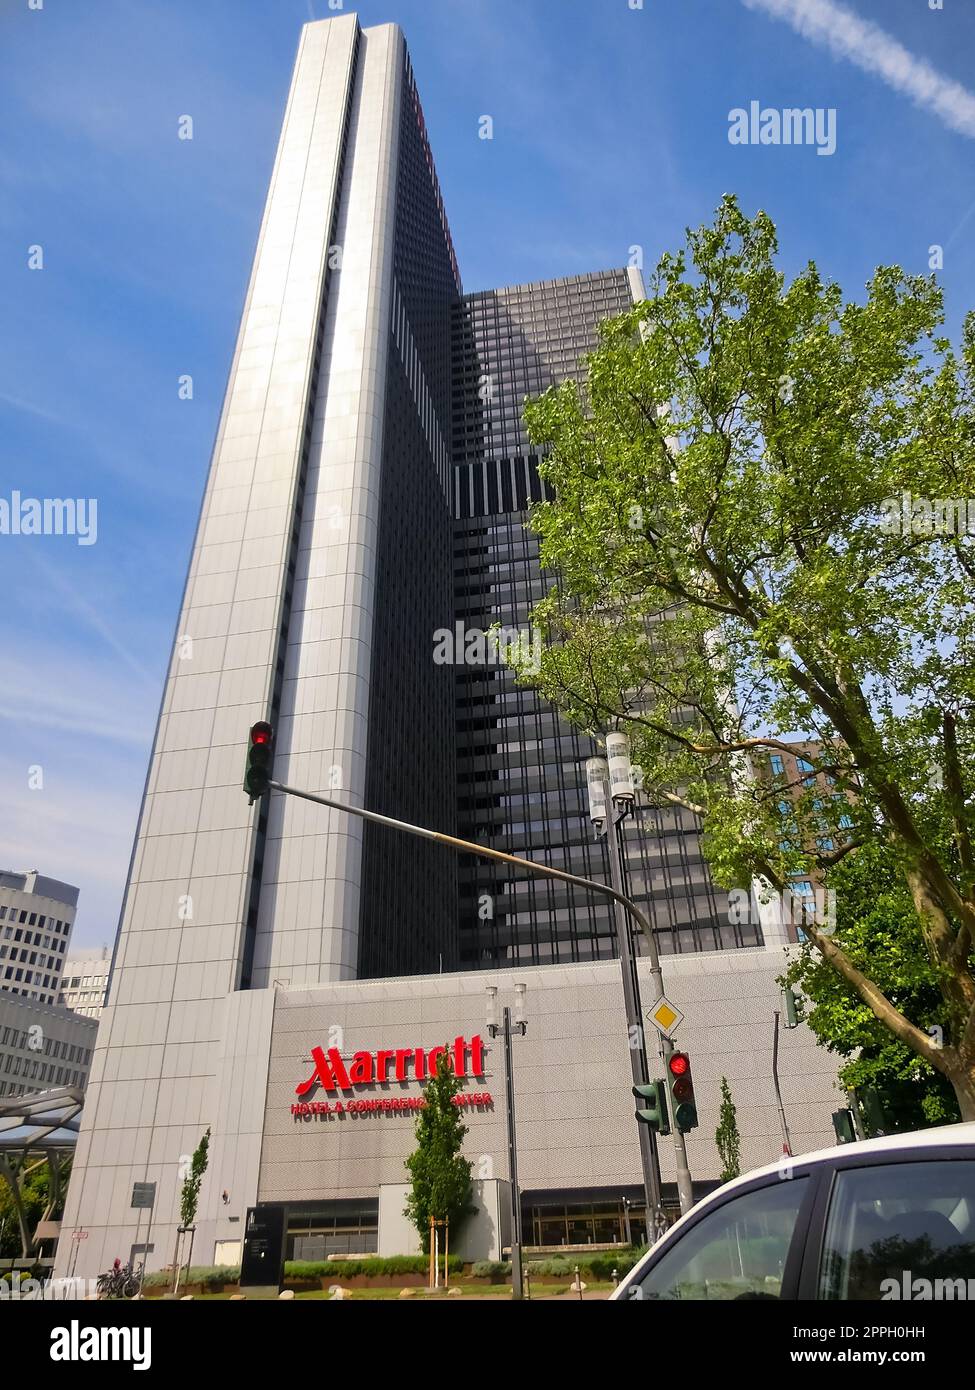 Frankfurt am Main, Deutschland - 10. Mai 2022: Marriott Hotel. Marriott International, Inc. Ist ein amerikanisches multinationales Unternehmen mit Hotels, Wohnhäusern und Timesharing-Hotels. Stockfoto